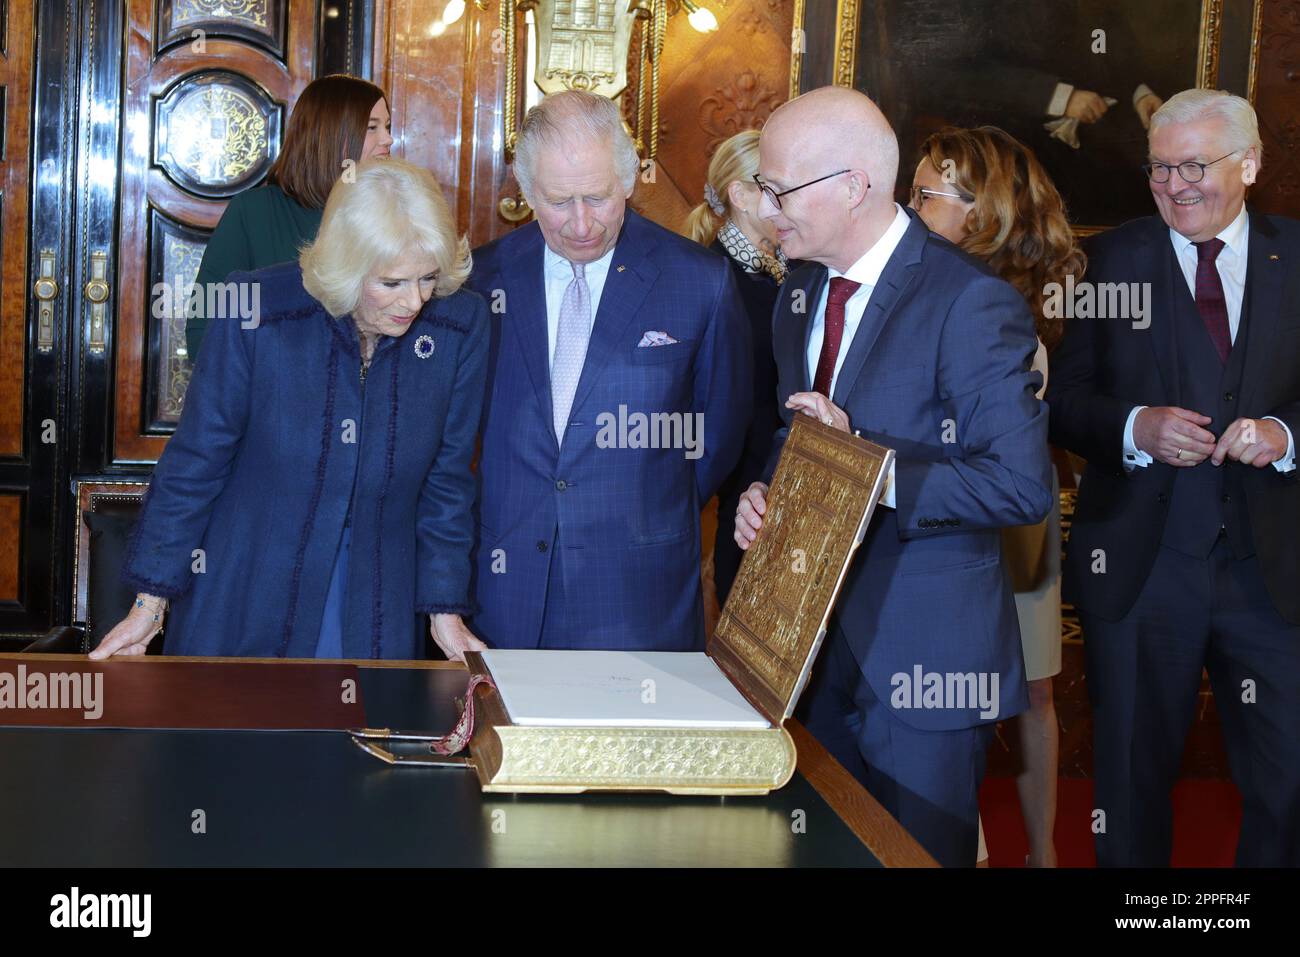 Peter Tschentscher, re Carlo III e regina consorte Camilla, visita di stato ad Amburgo, 31.03.2023, ingresso nel libro d'oro Foto Stock